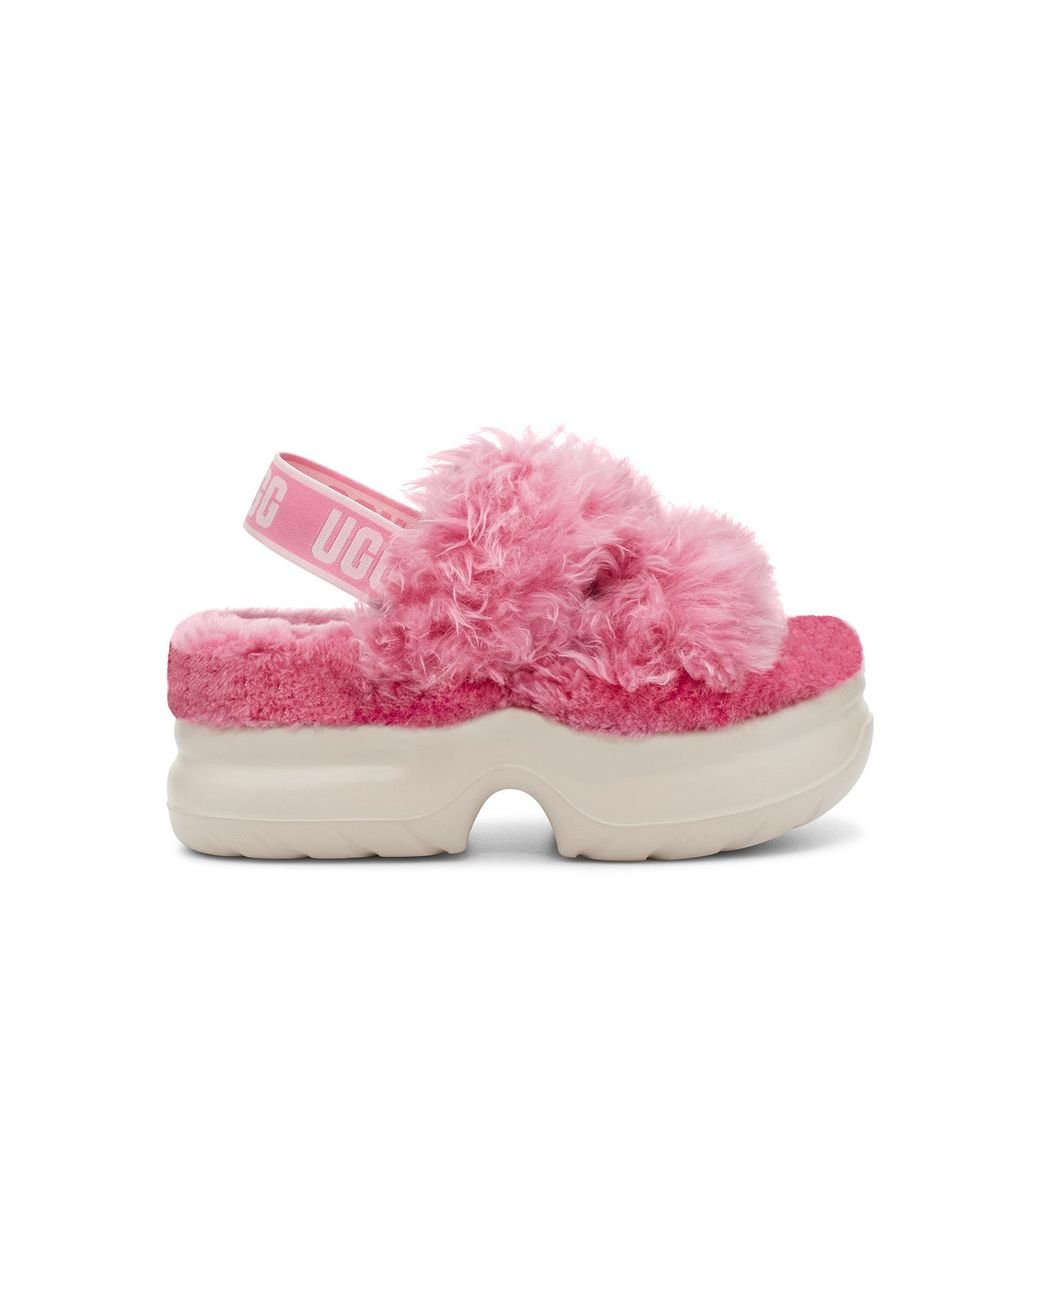 Ugg Boots Womens Scuffette II Horizon Pink | Landau Store